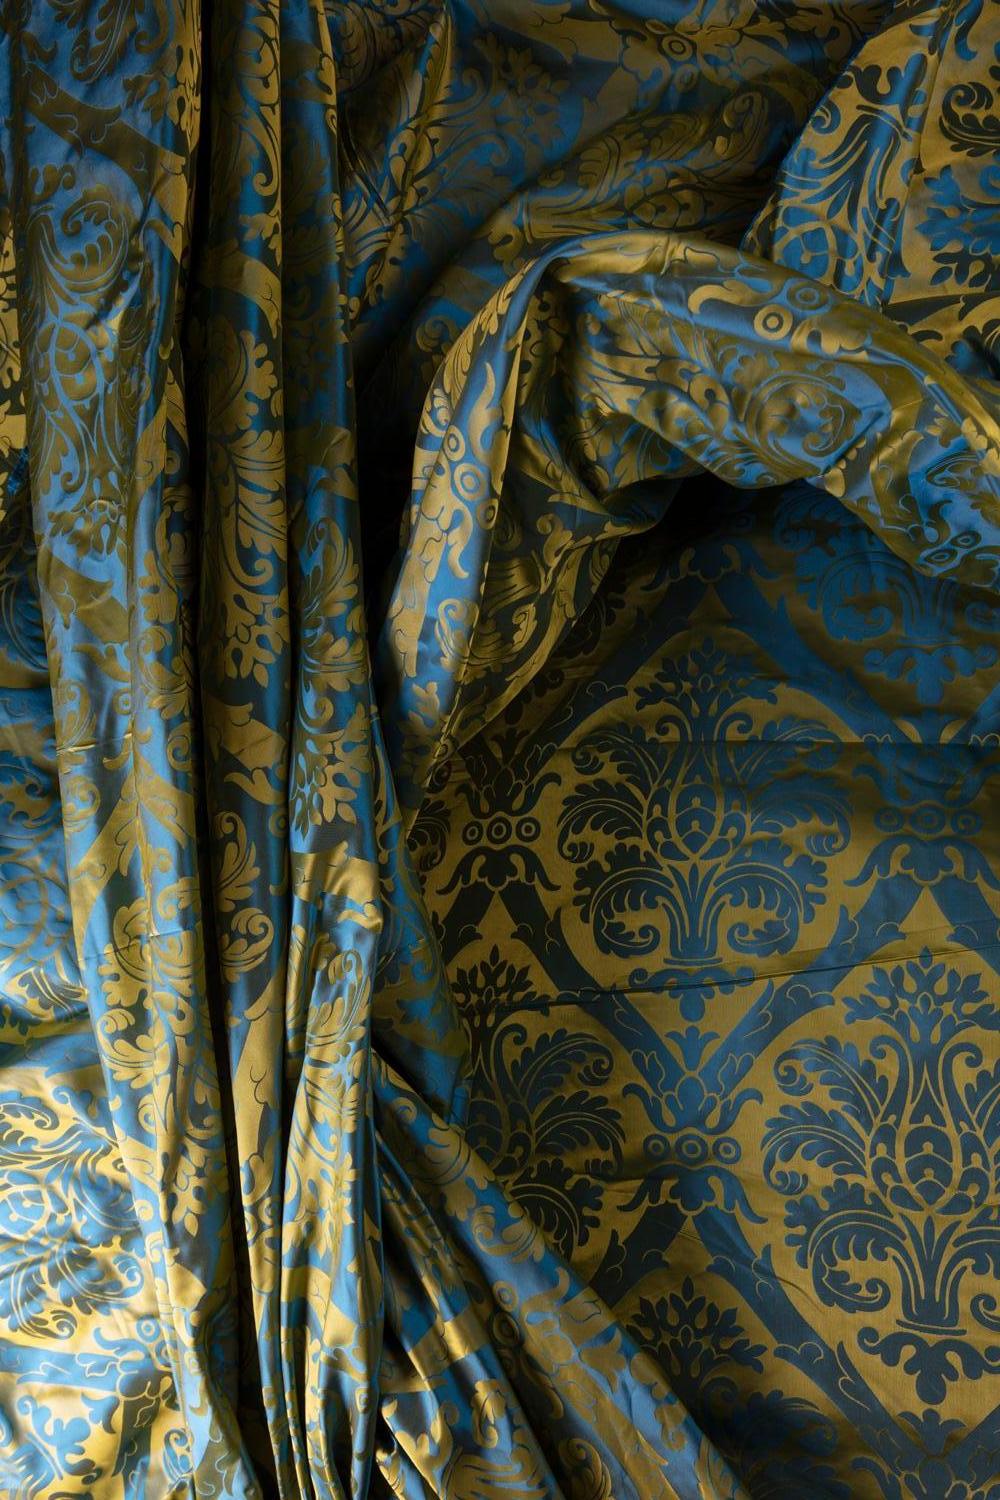 Tissu damassé en soie de Designer House, dans un motif classique et populaire de l'Abusson napoléonien. Finement tissé sur des métiers jacquard en fibres 100% soyeuses, dans un tissage classique qui crée un motif réversible et irrévocable.